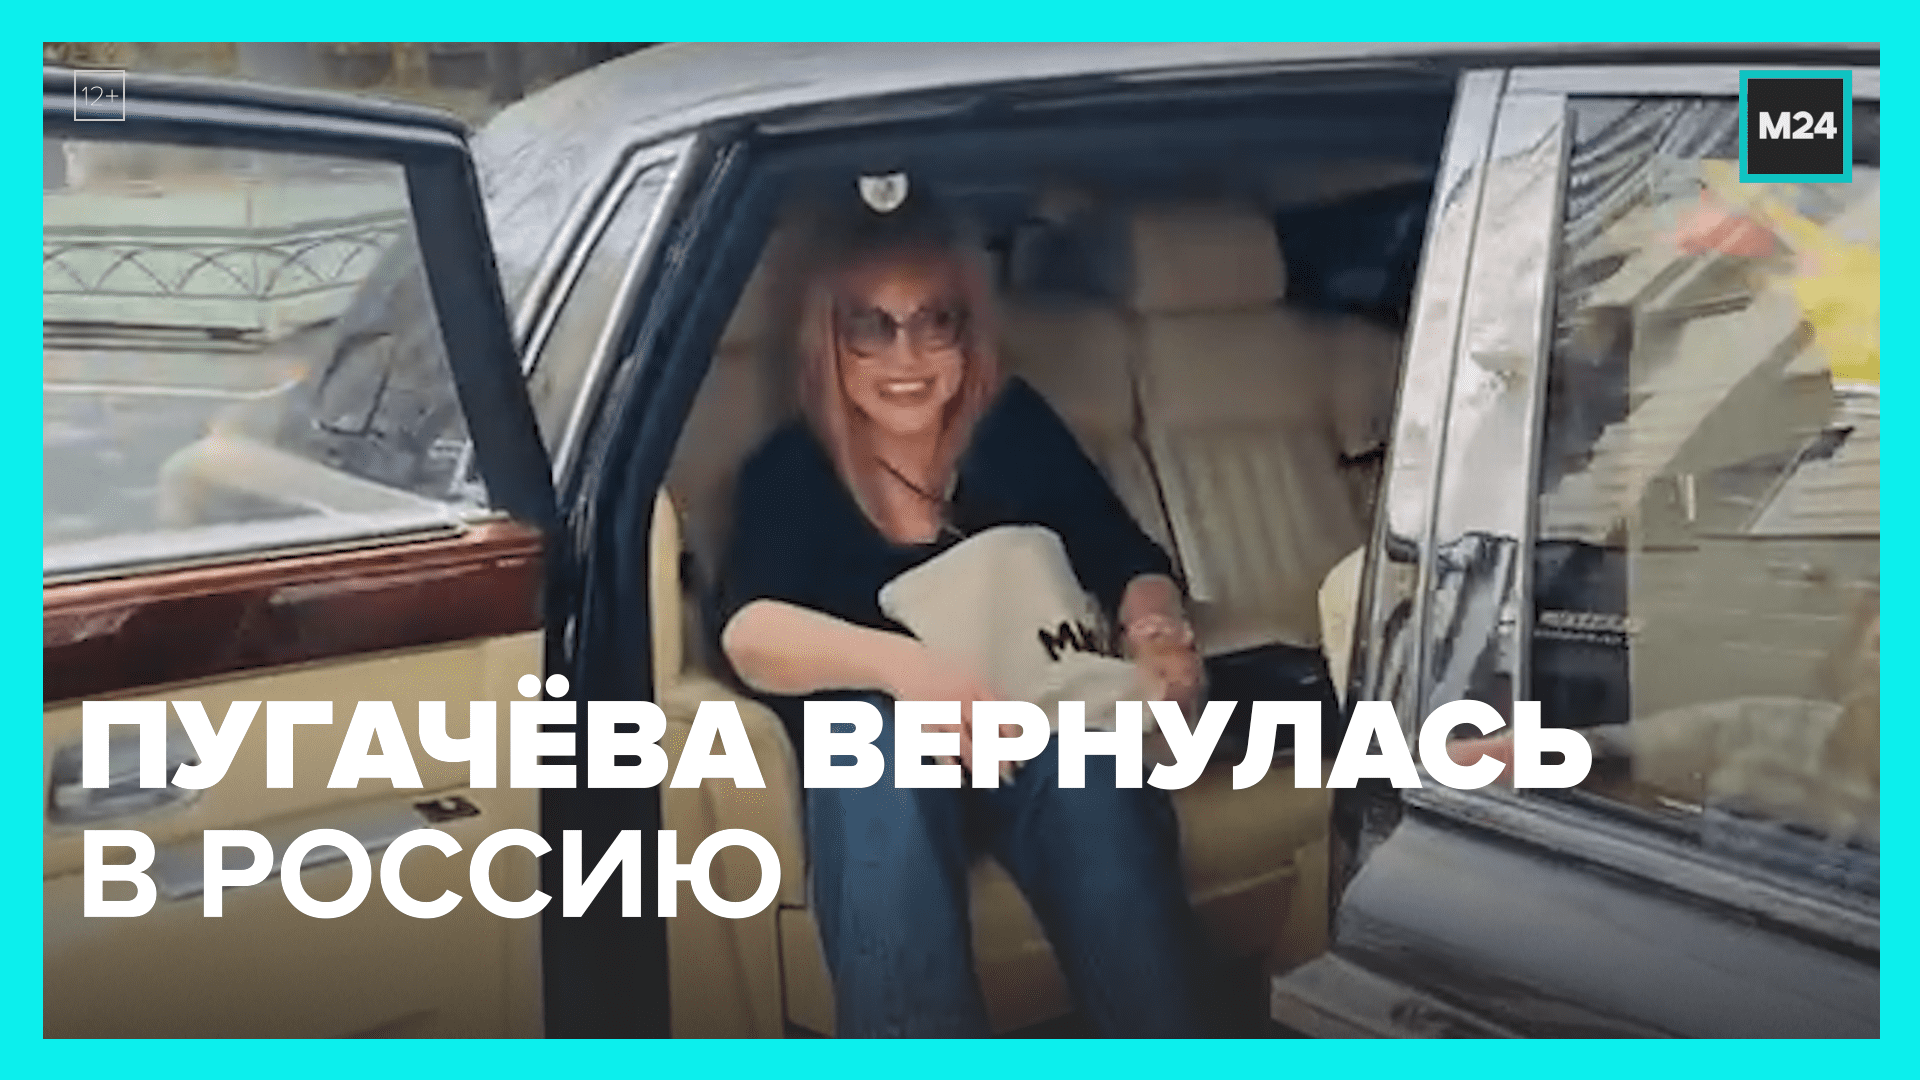 Видеообращение пугачевой к михайлову. Пугачиха вернулась. Пугачева вернулась. Пугачева возвращается в Россию.